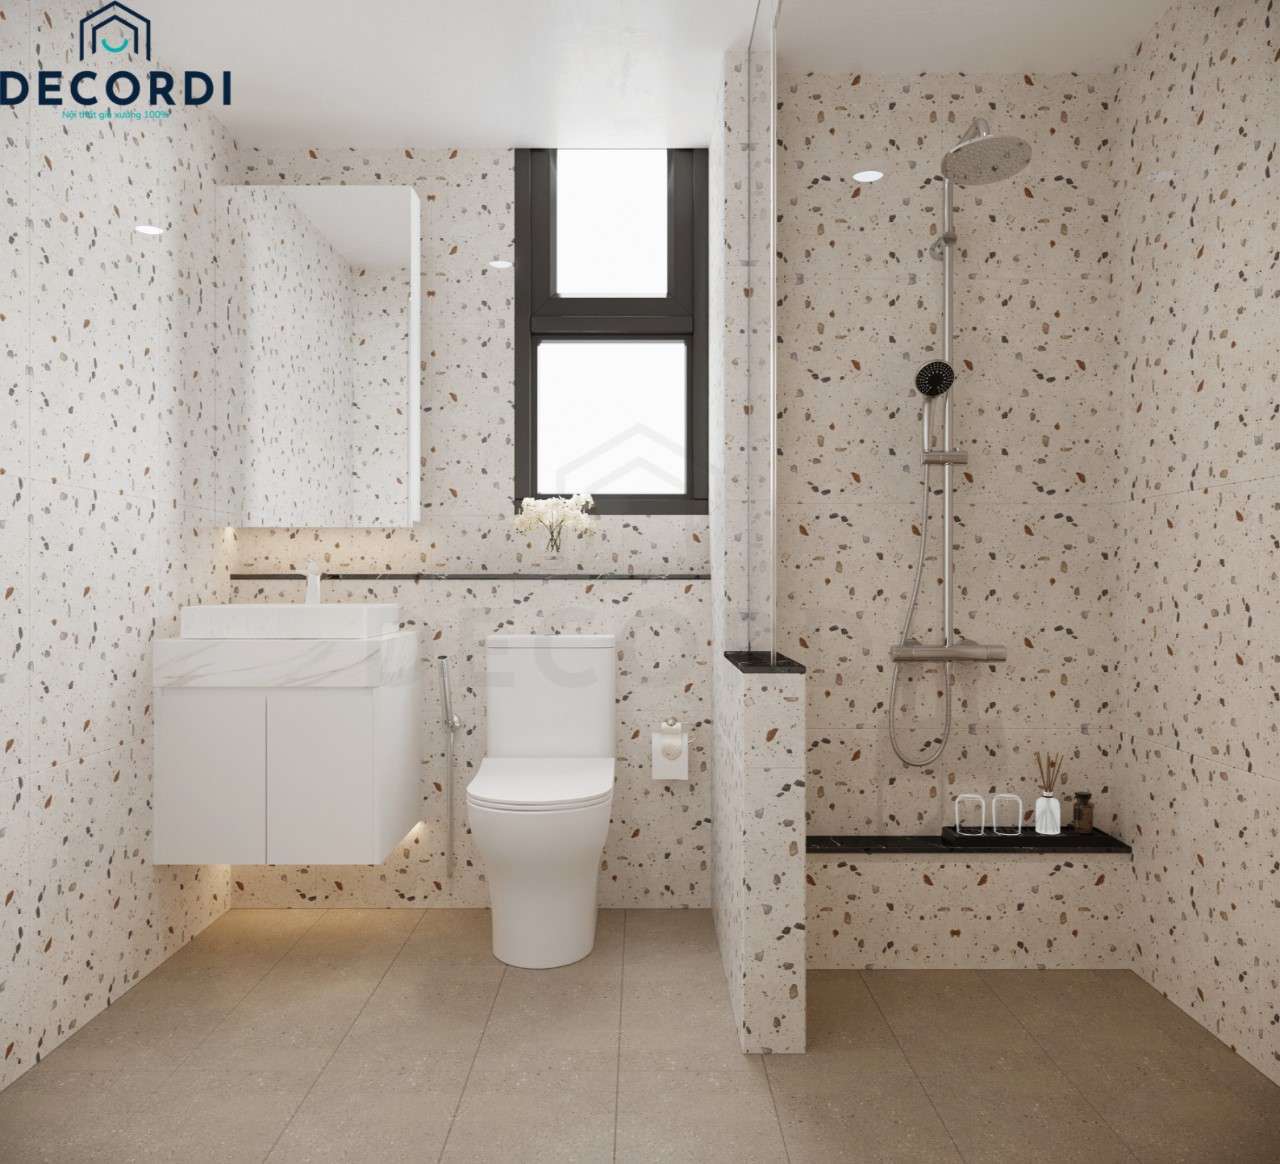 Phòng tắm hiện đại được ốp gạch toàn bộ ngăn cách bởi vách kính cho khu vực vệ sinh sạch sẽ